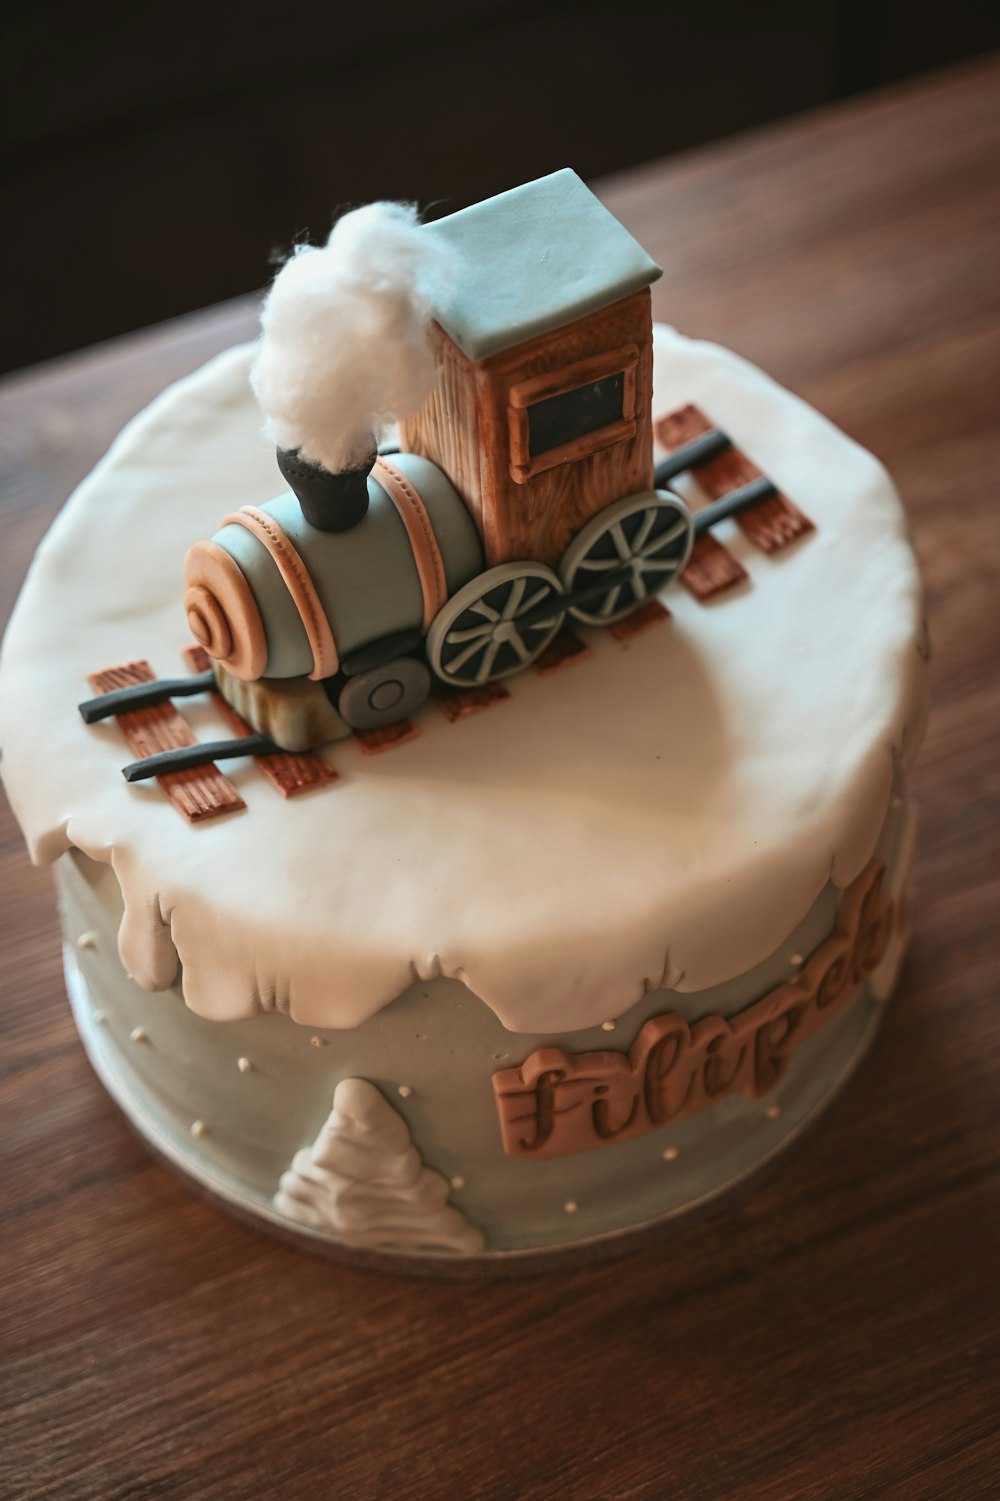 그 위에 기차가 있는 케이크